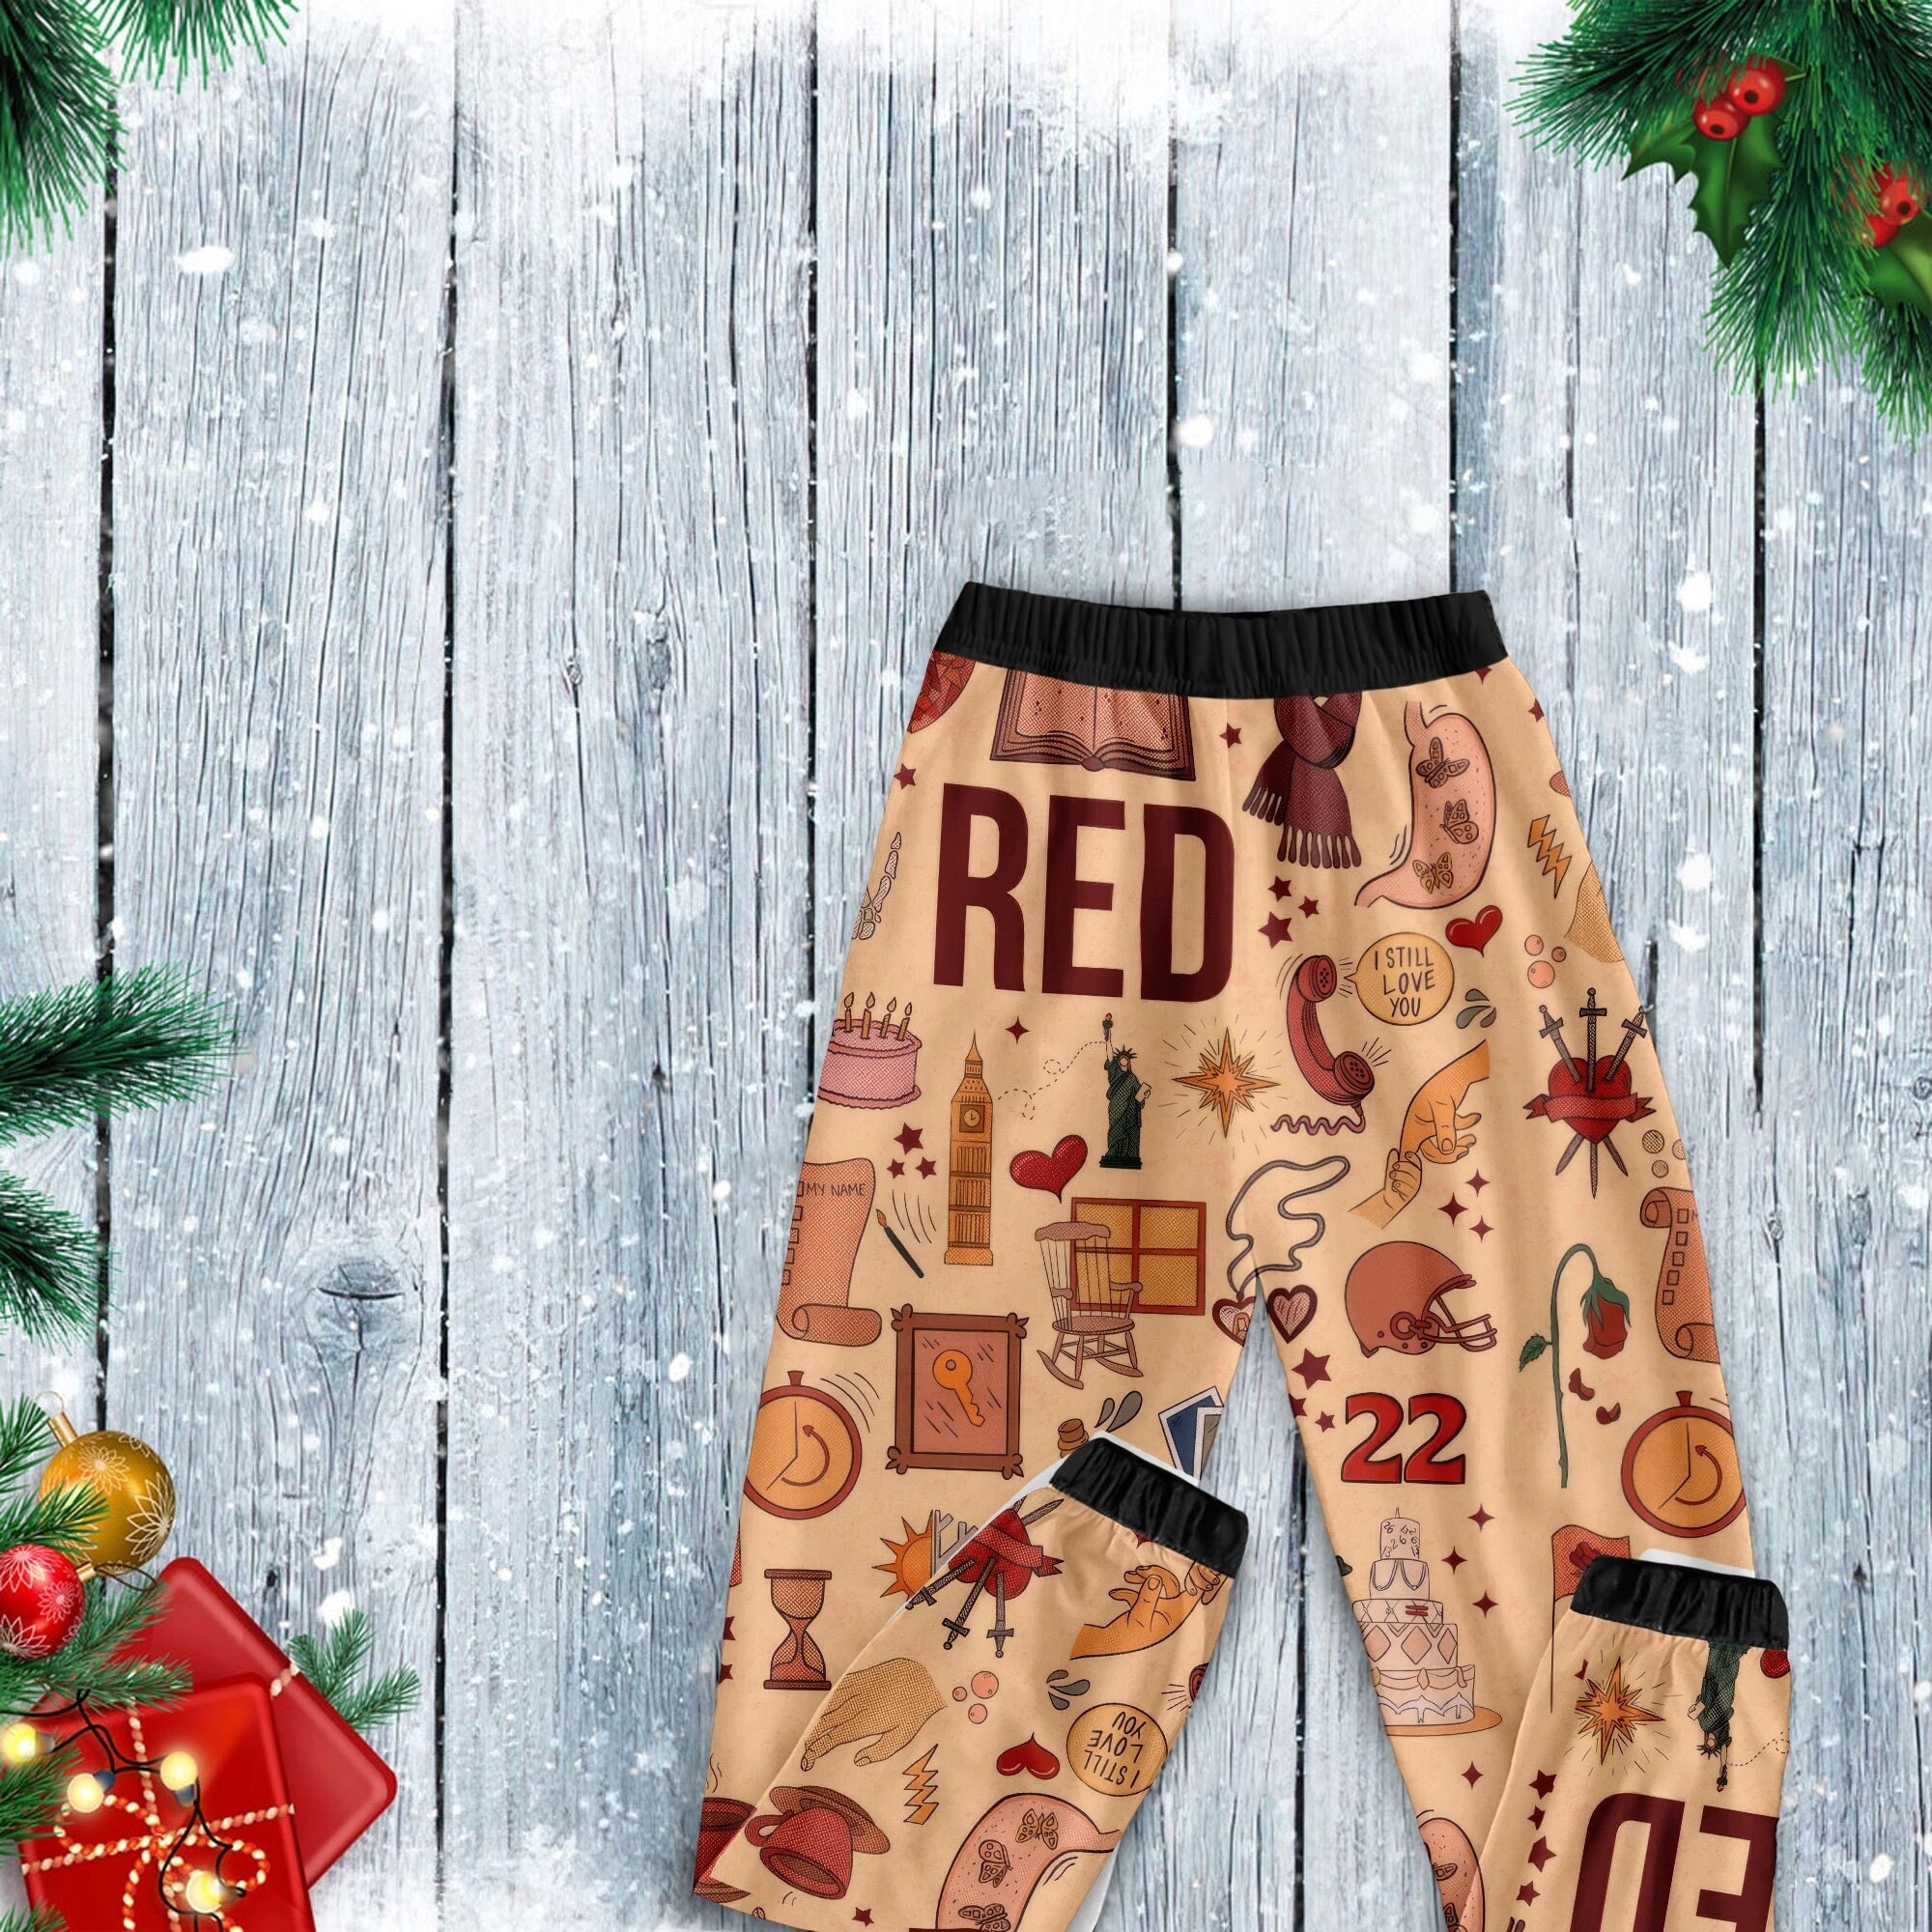 Taylor Red Pajamas Set, Personalized Family Pajamas, Family Christmas Pajamas Set